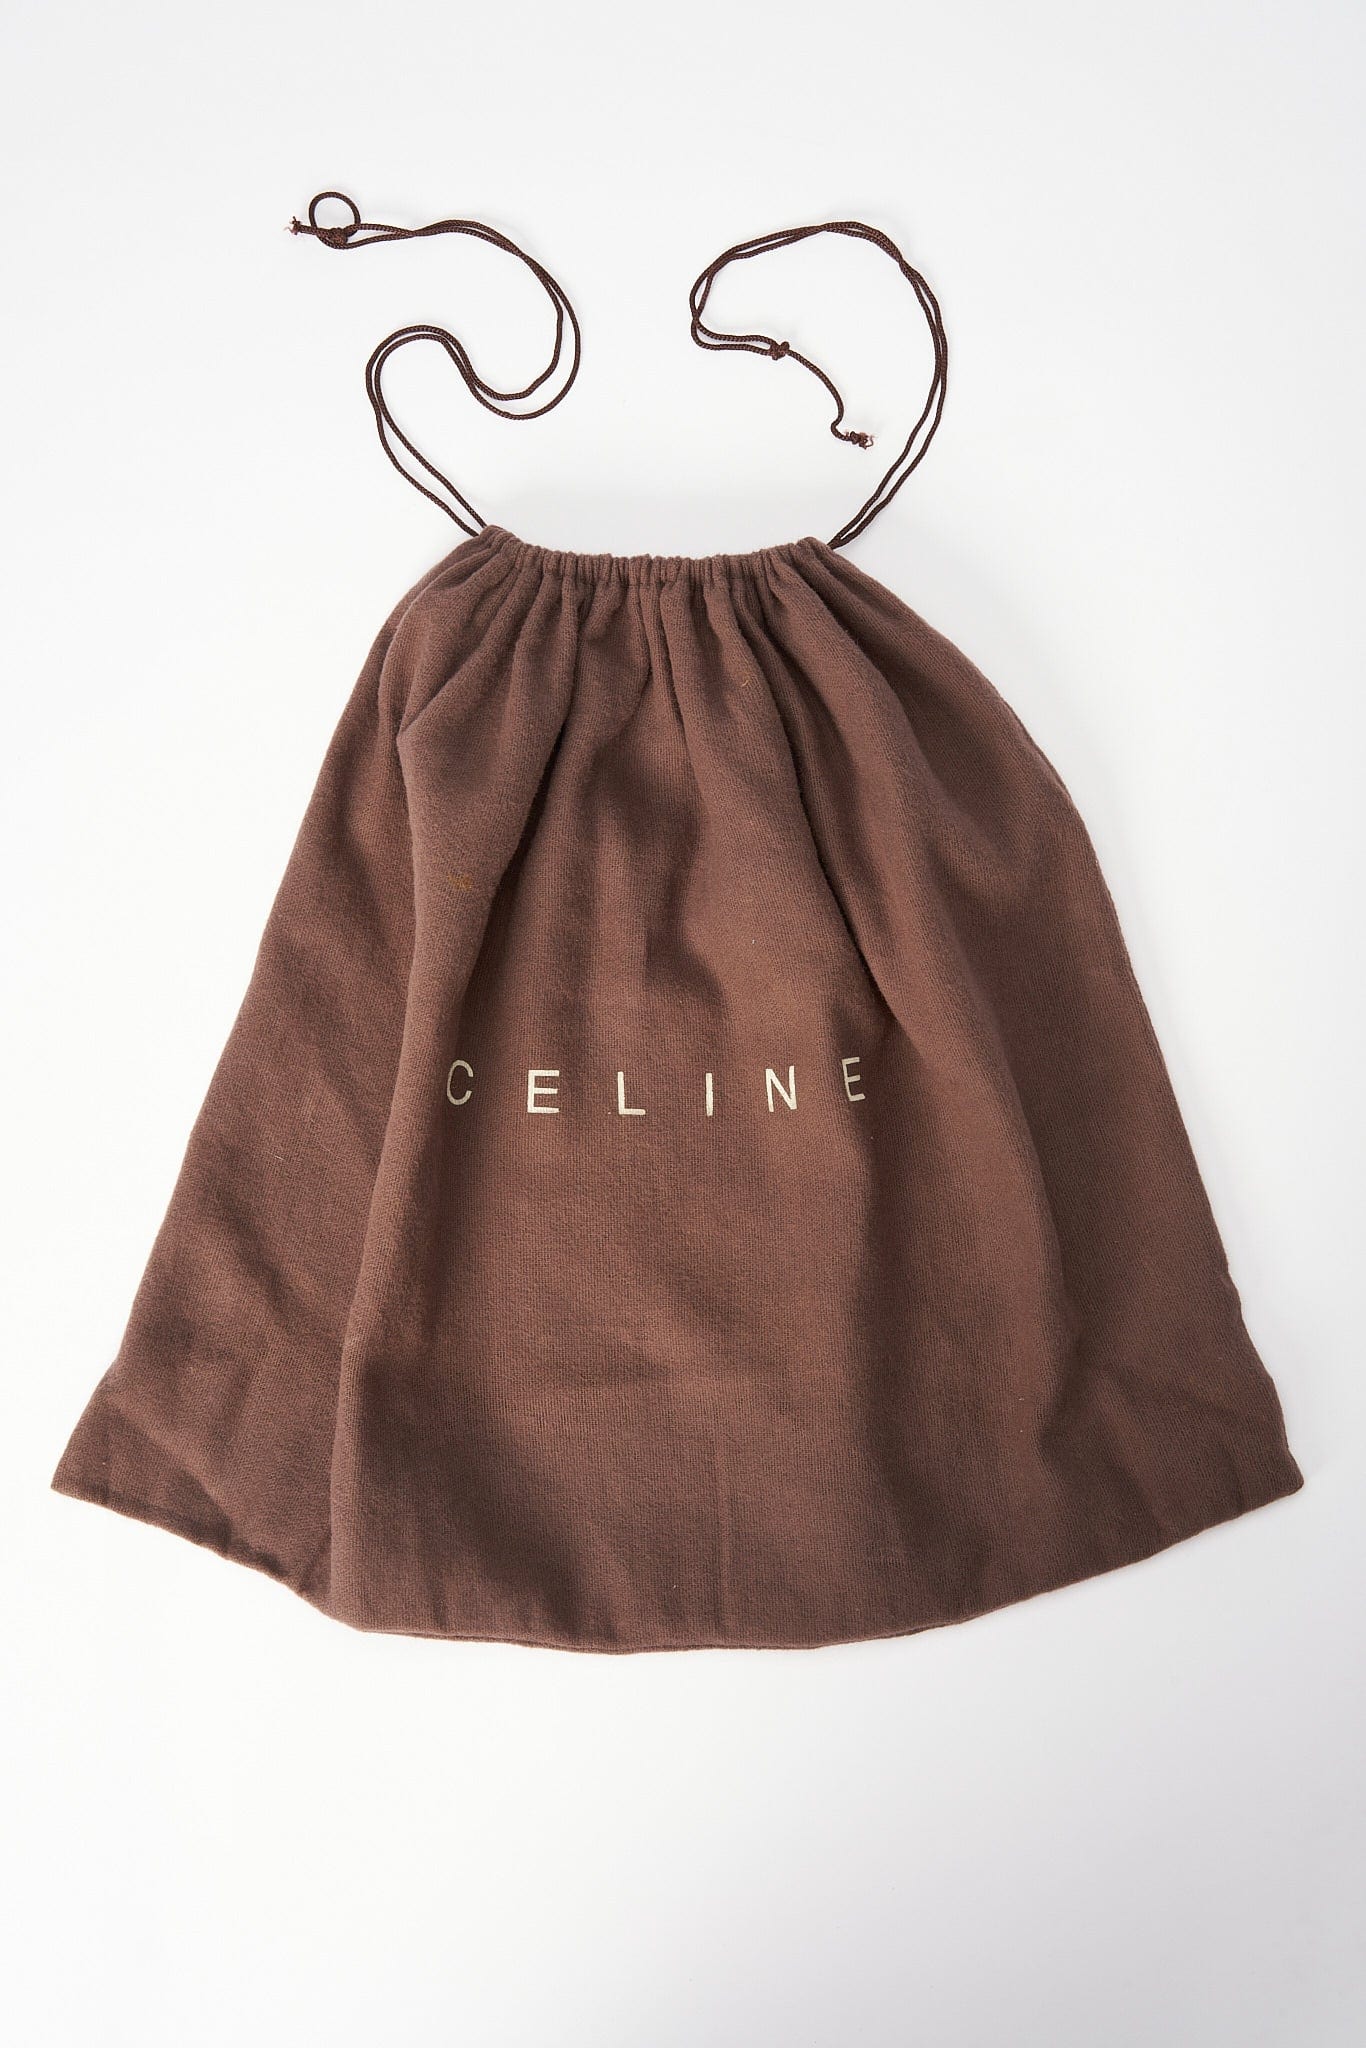 Vintage Celine Brown Suede Shoulder Bag